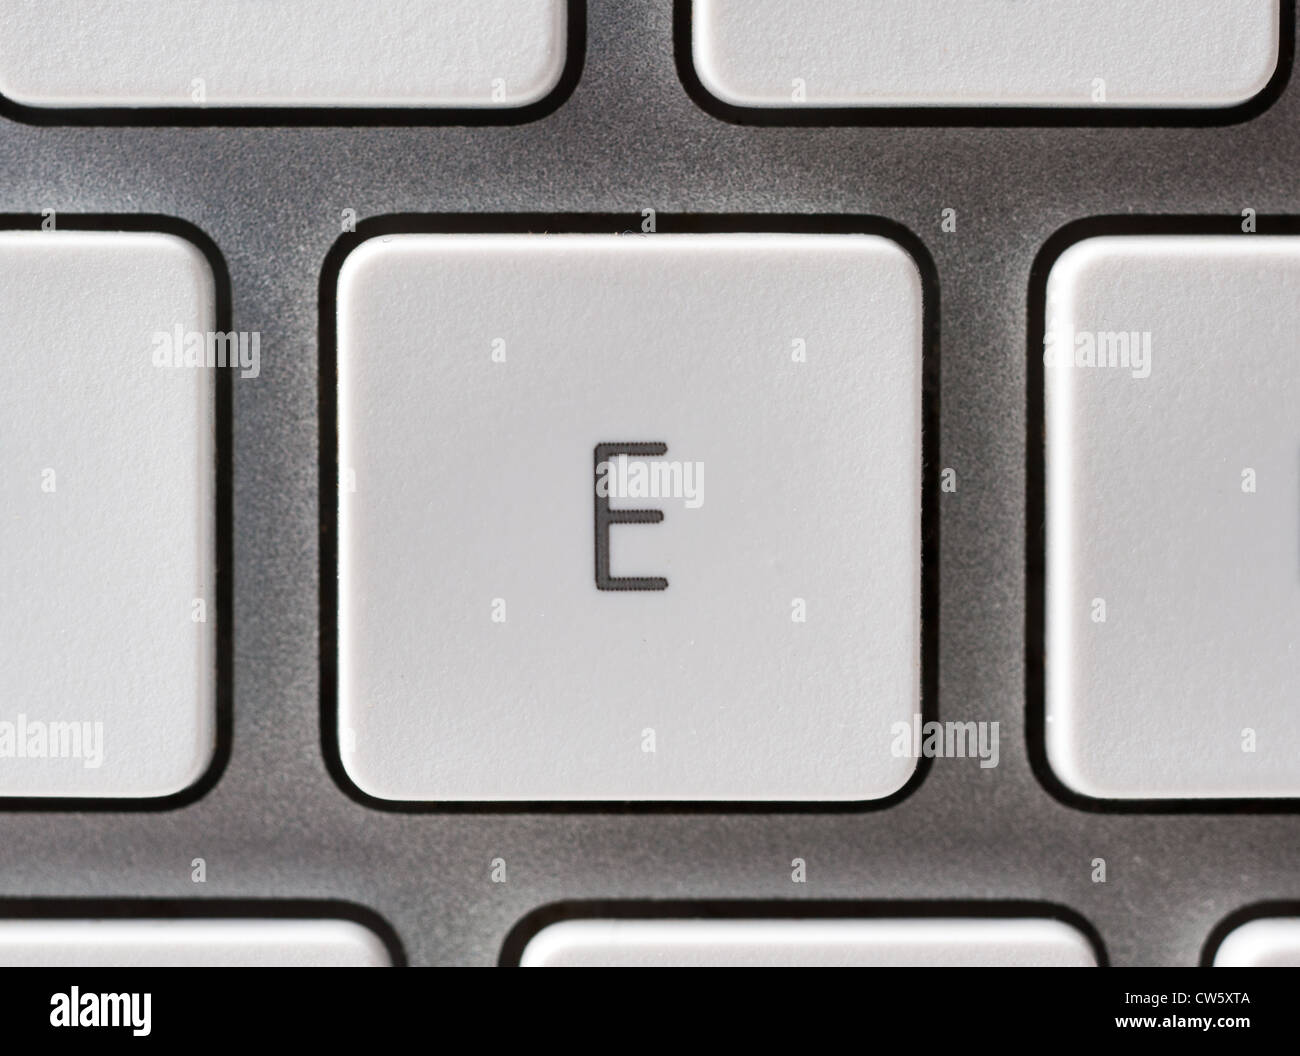 Buchstabe E auf einer Apple-Tastatur Stockfoto